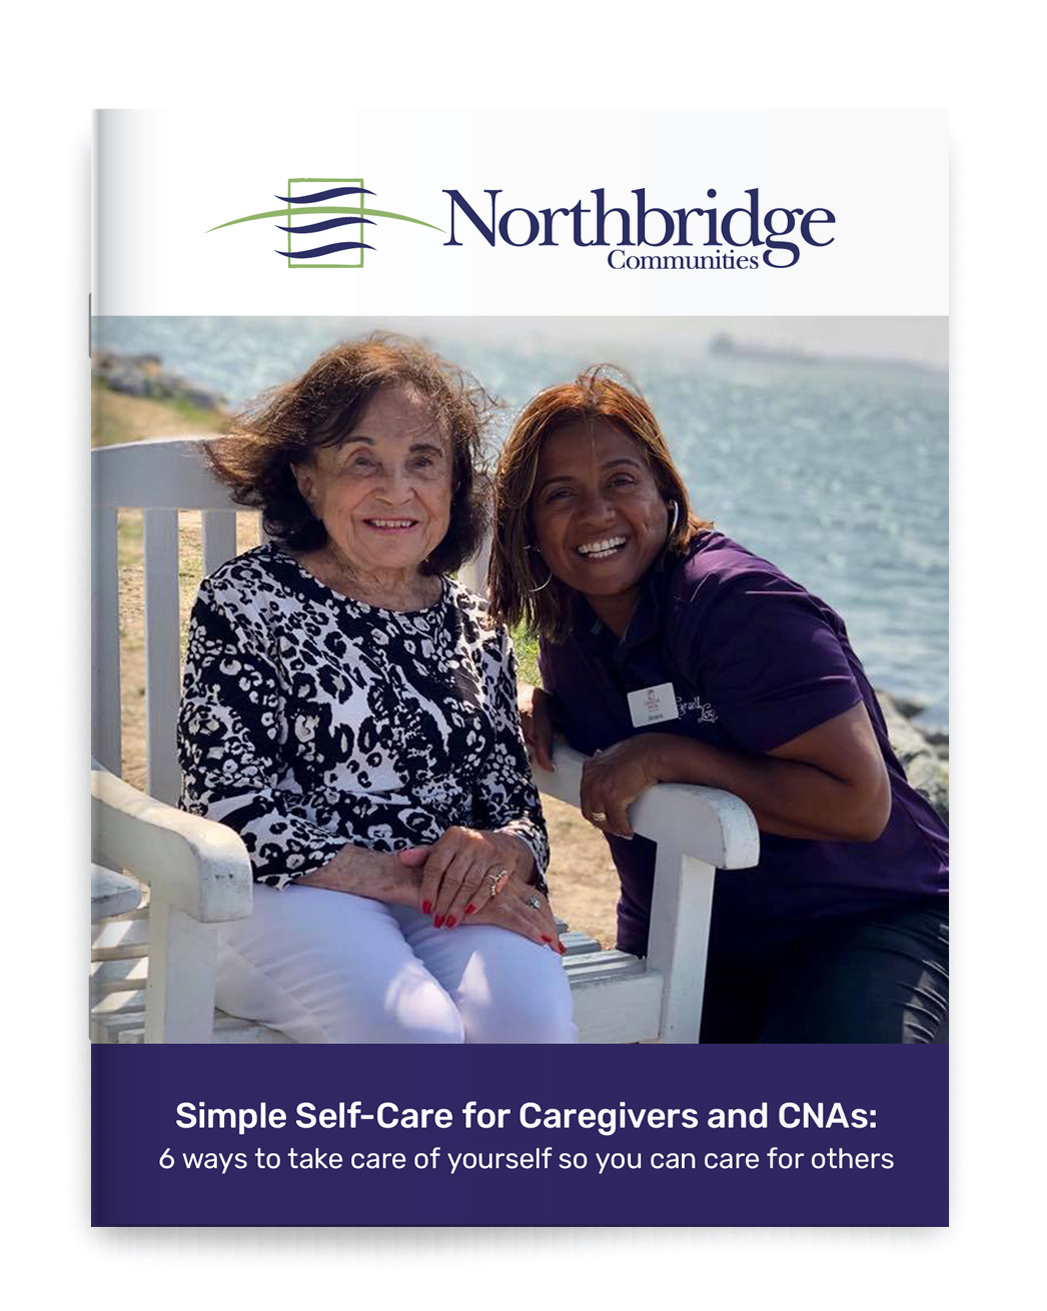 Self-Care for Caregivers and CNAs